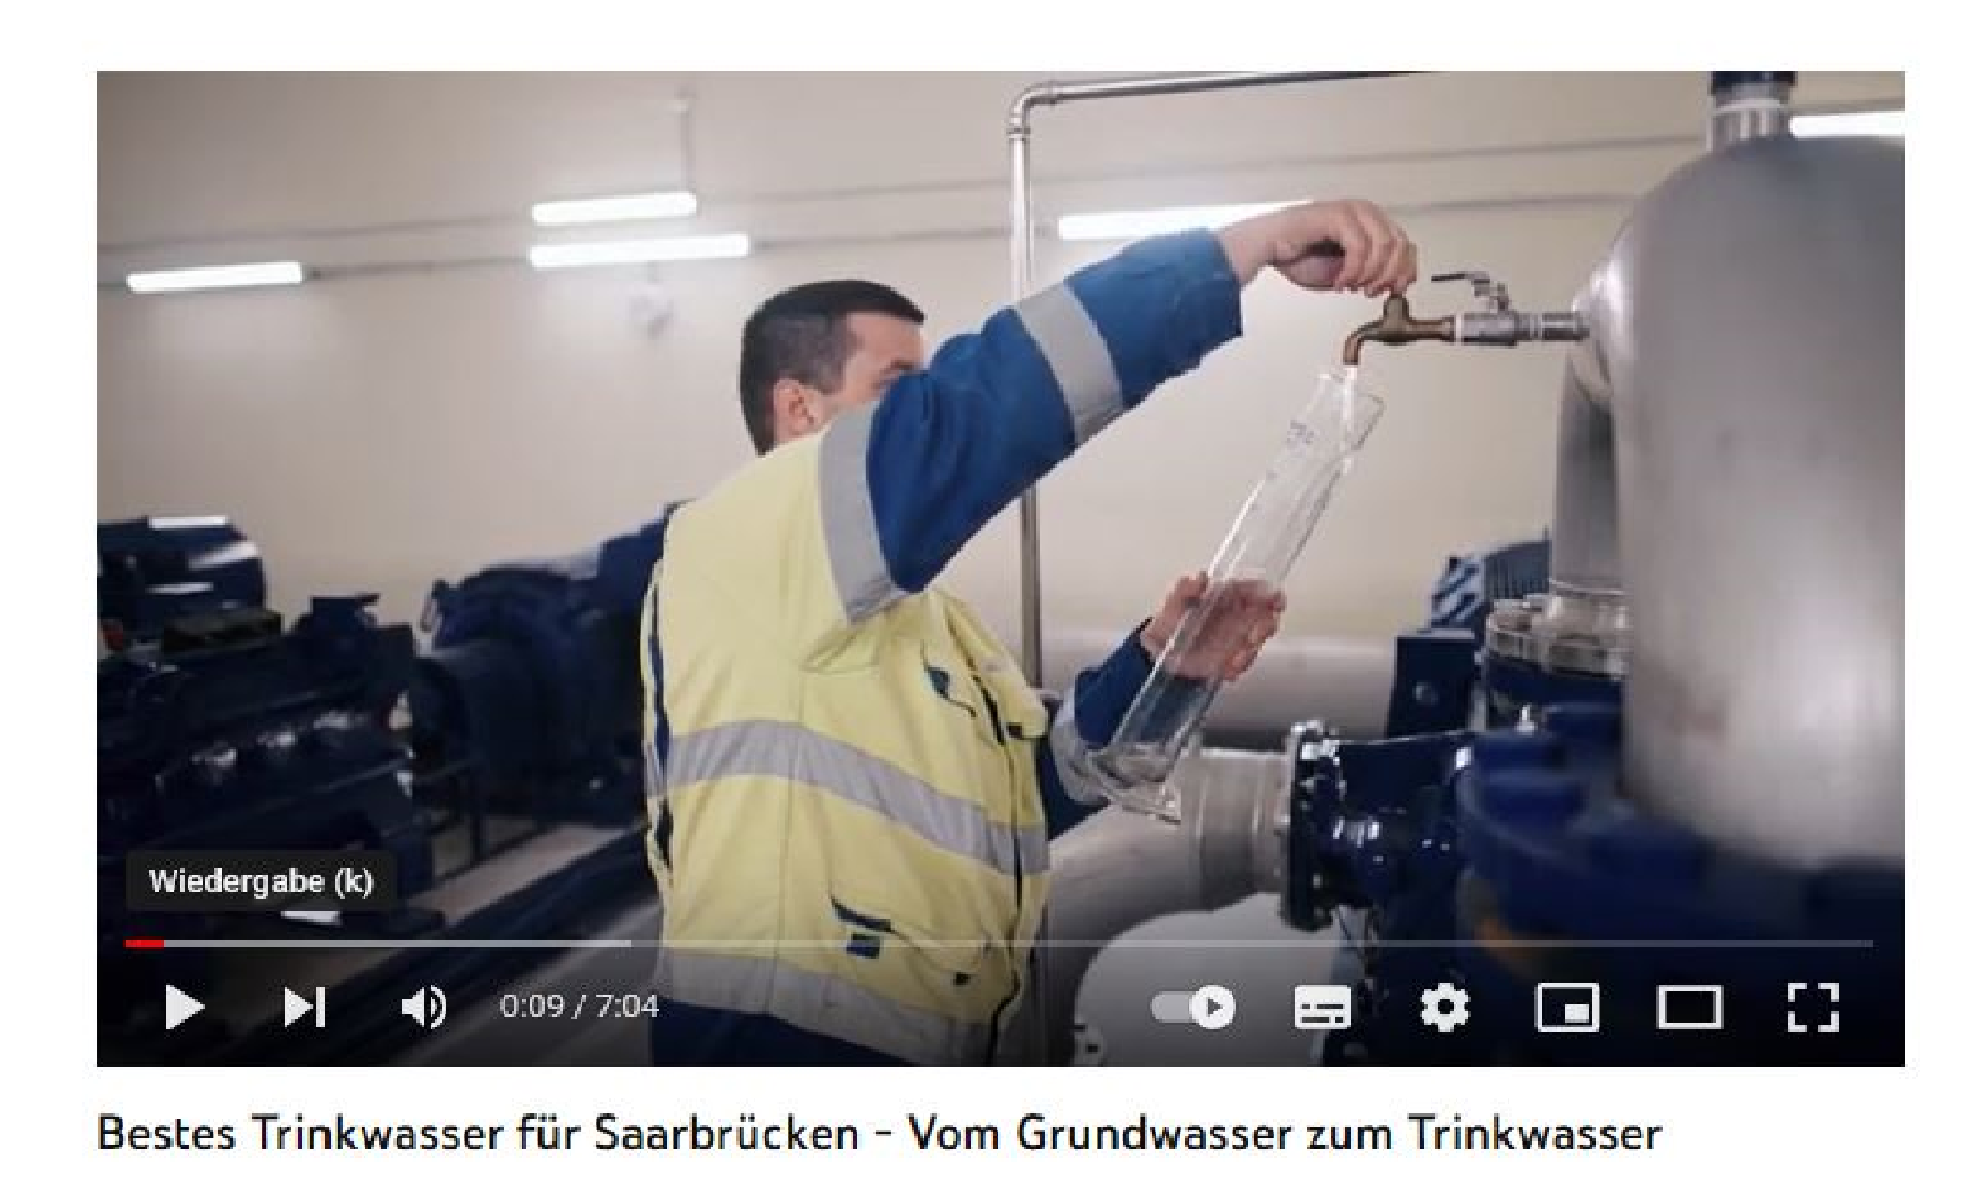 Film: Bestes Trinkwasser für Saarbrücken - Vom Grundwasser zum Trinkwasser